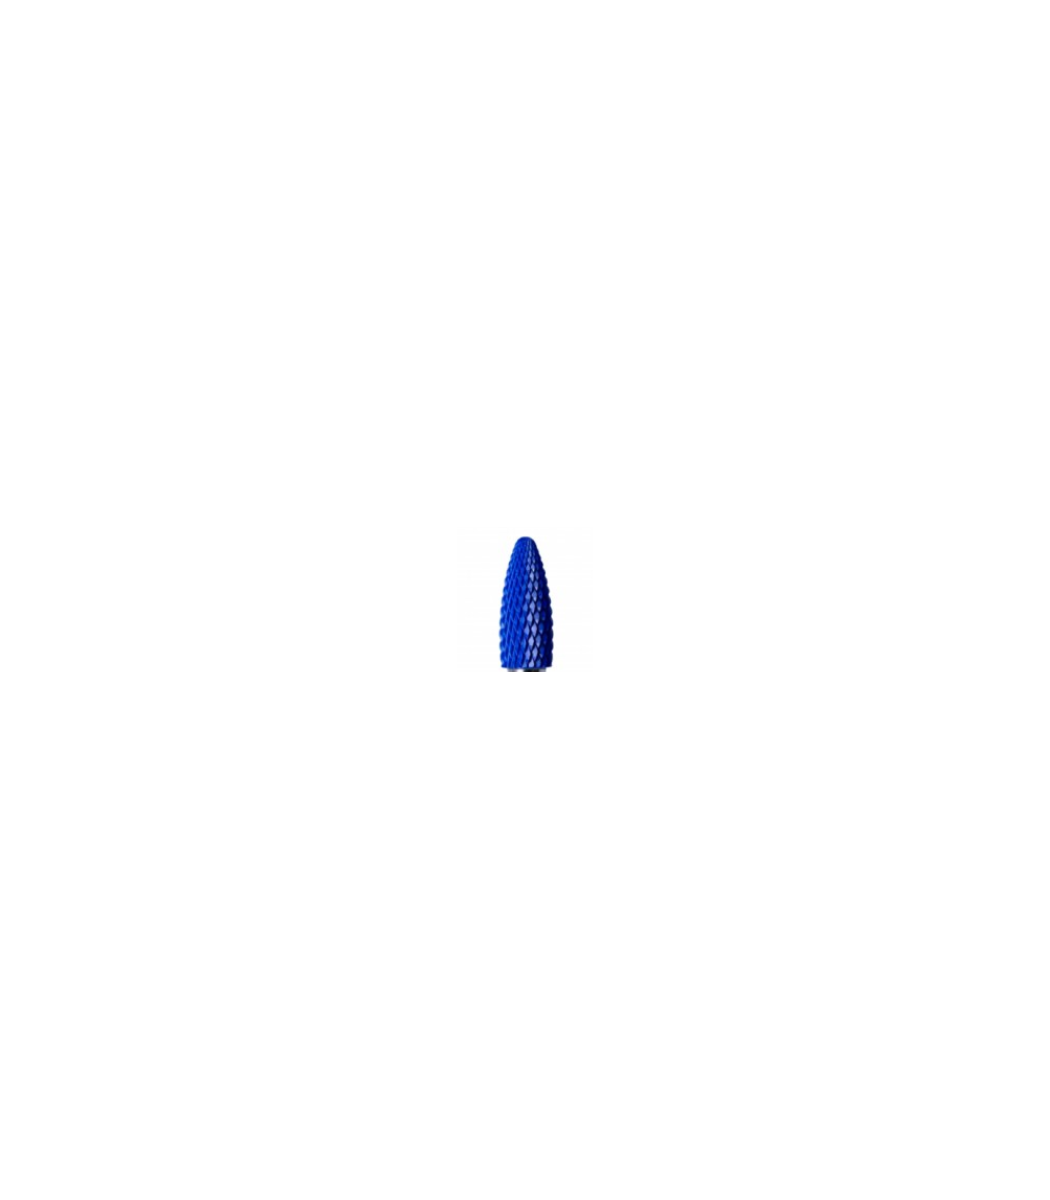 Κεραμική φρέζα νυχιων μπλε φλογα φ6.5mm